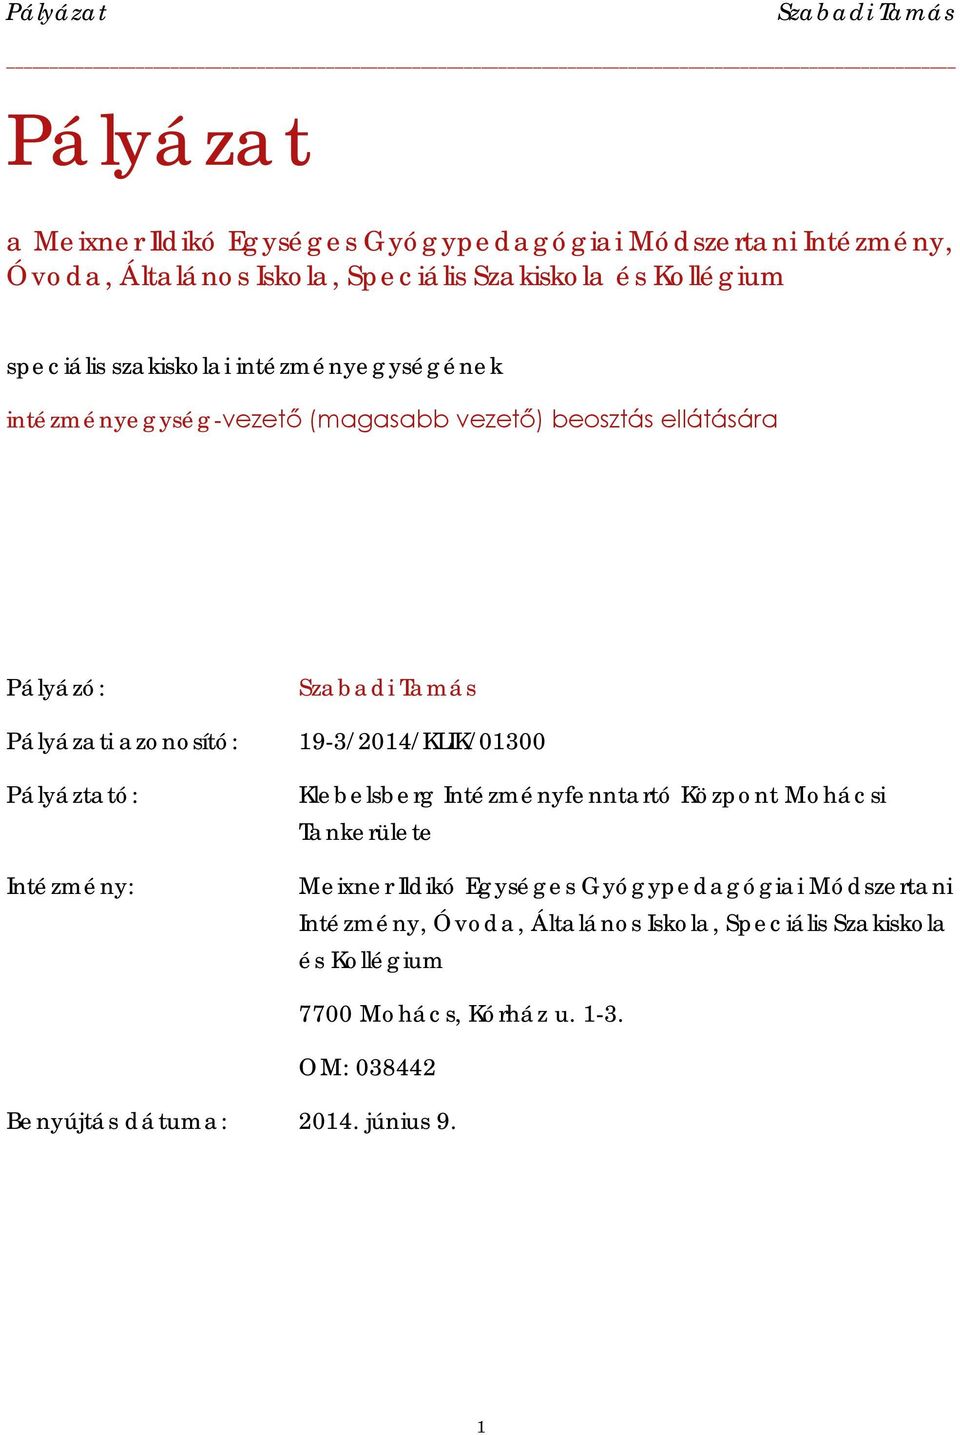 Pályáztató: Intézmény: 19-3/2014/KLIK/01300 Klebelsberg Intézményfenntartó Központ Mohácsi Tankerülete Meixner Ildikó Egységes